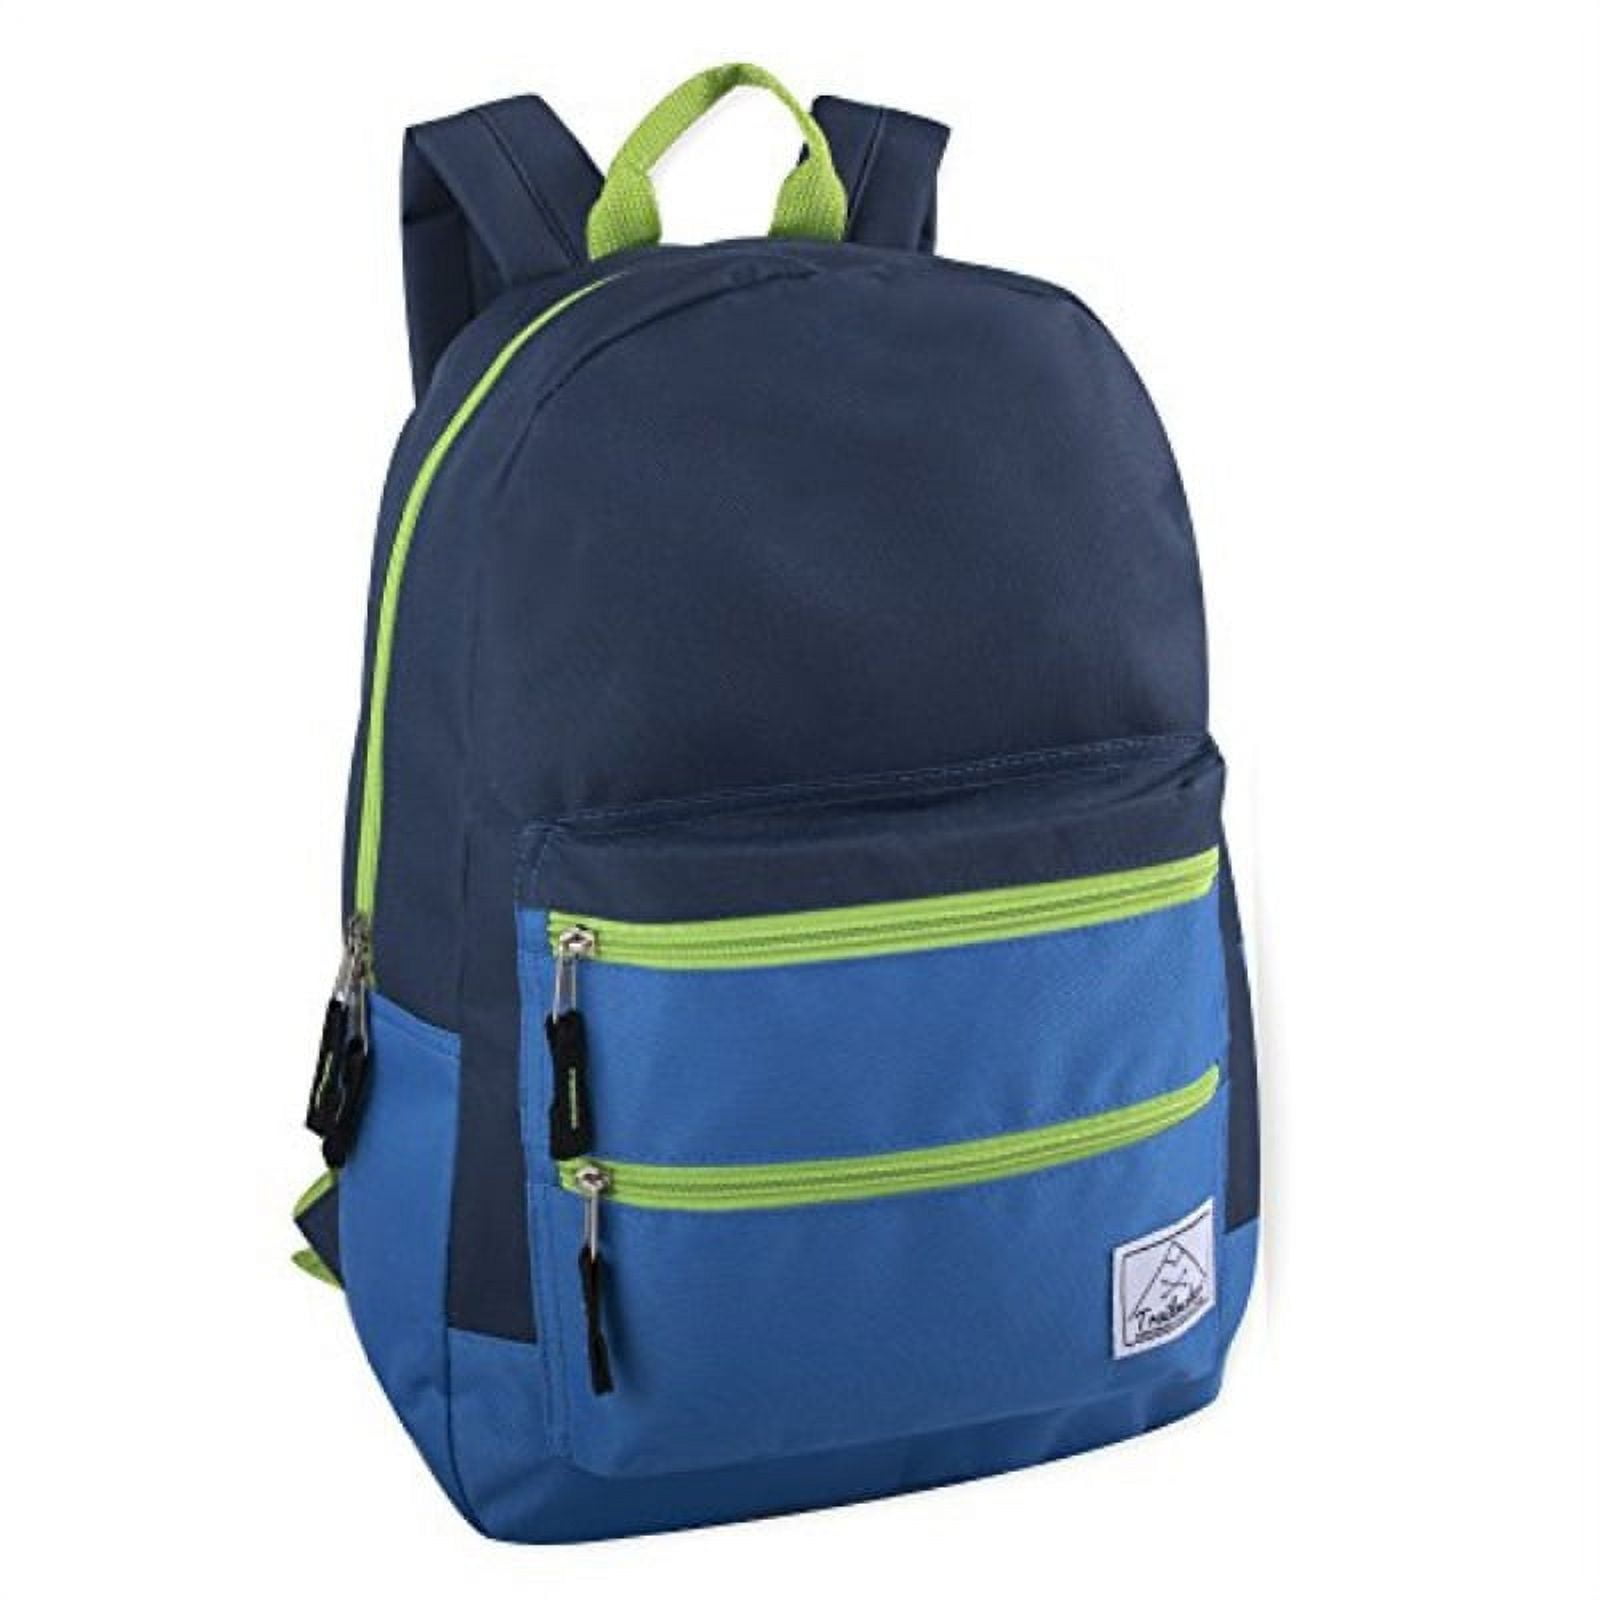 Trailmaker, Multi-Color backpack with adjustable padded shoulder straps ...